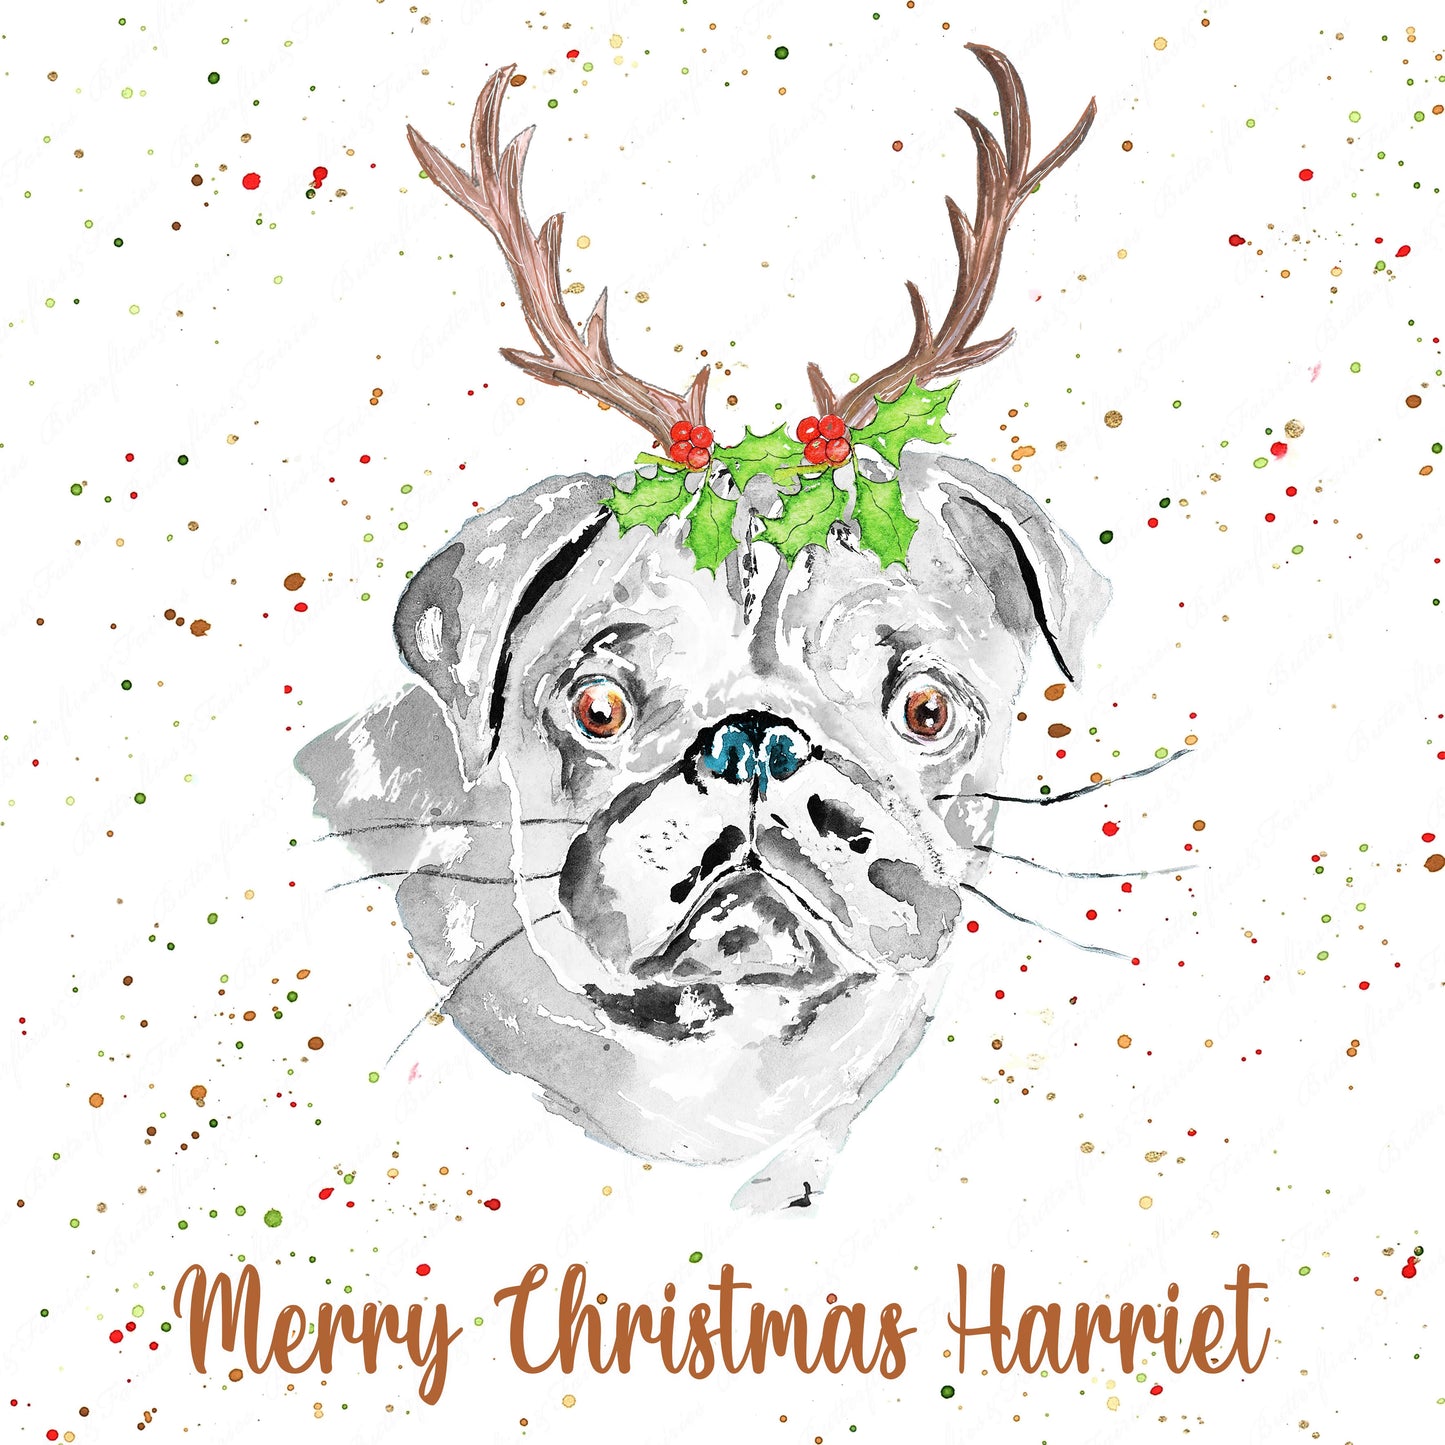 Personalised Pug Dog Christmas Card